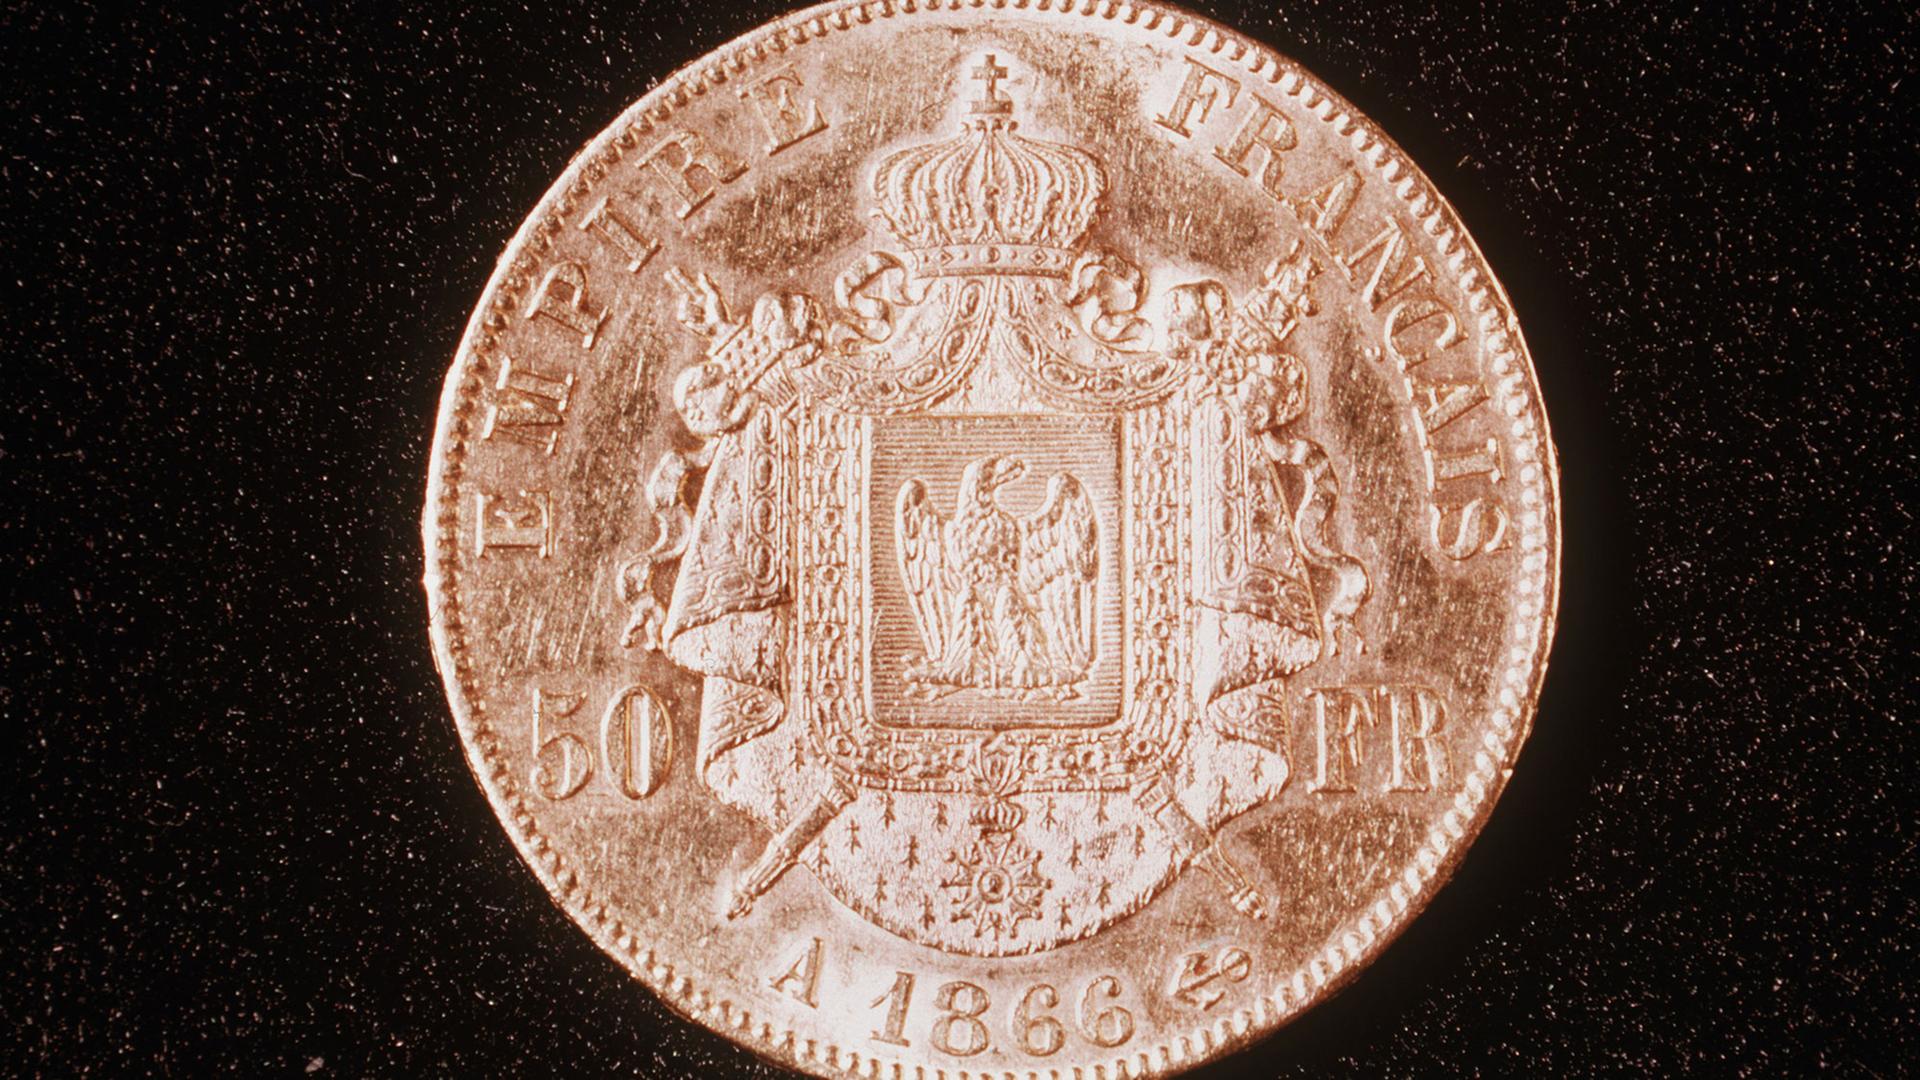 Die Rückseite einer französischen Goldmünze zu 50 Francs aus dem Jahre 1866 zur Zeit Napoleon IIi.